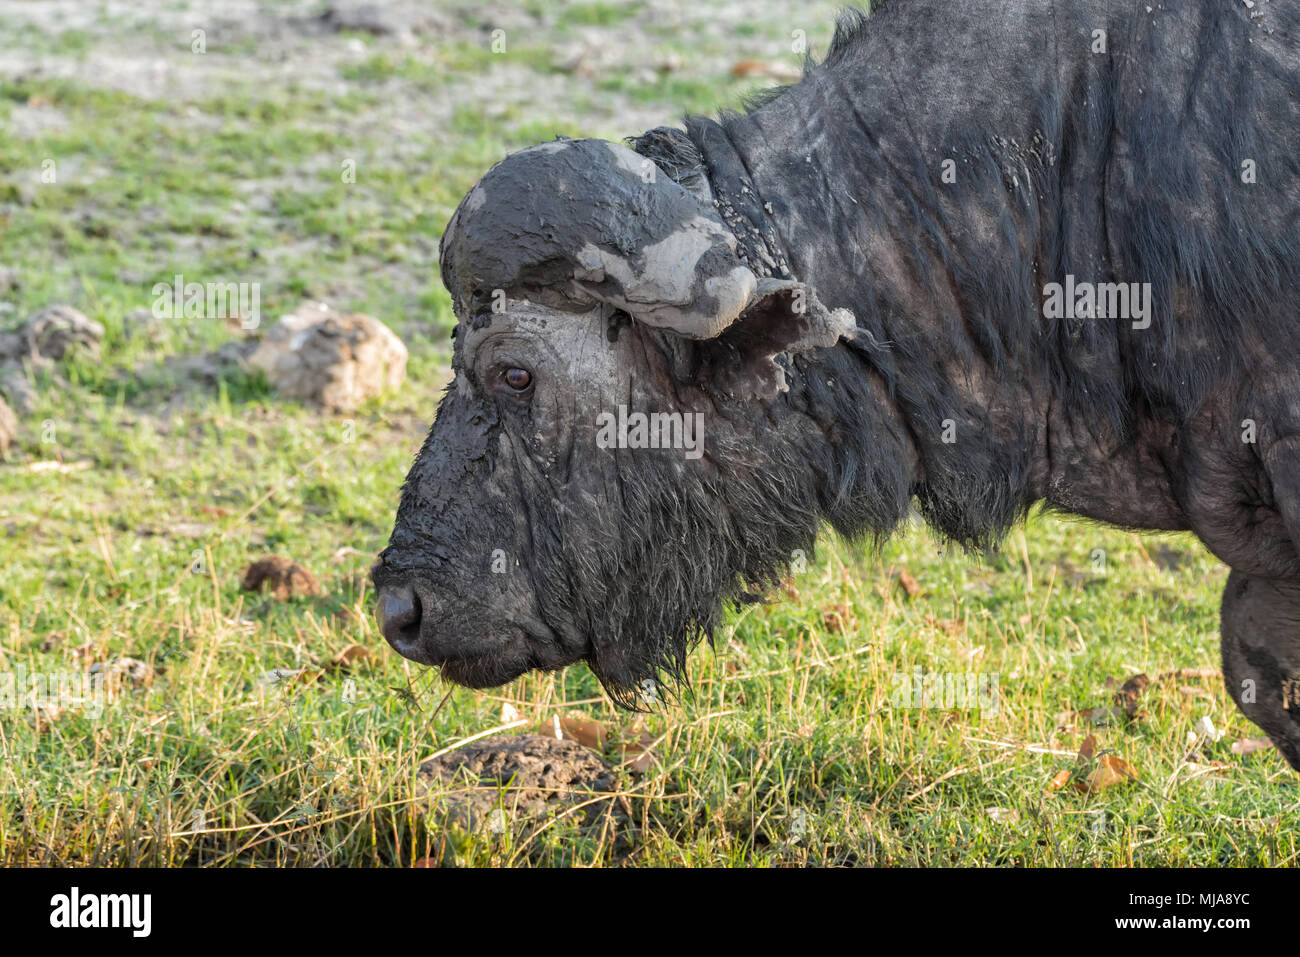 Old Cape buffalo (Syncerus caffer) con un corno rotto coperto di fango lambisce sulla banca del fiume Chobe nel Chobe National Park, il Botswana. Foto Stock